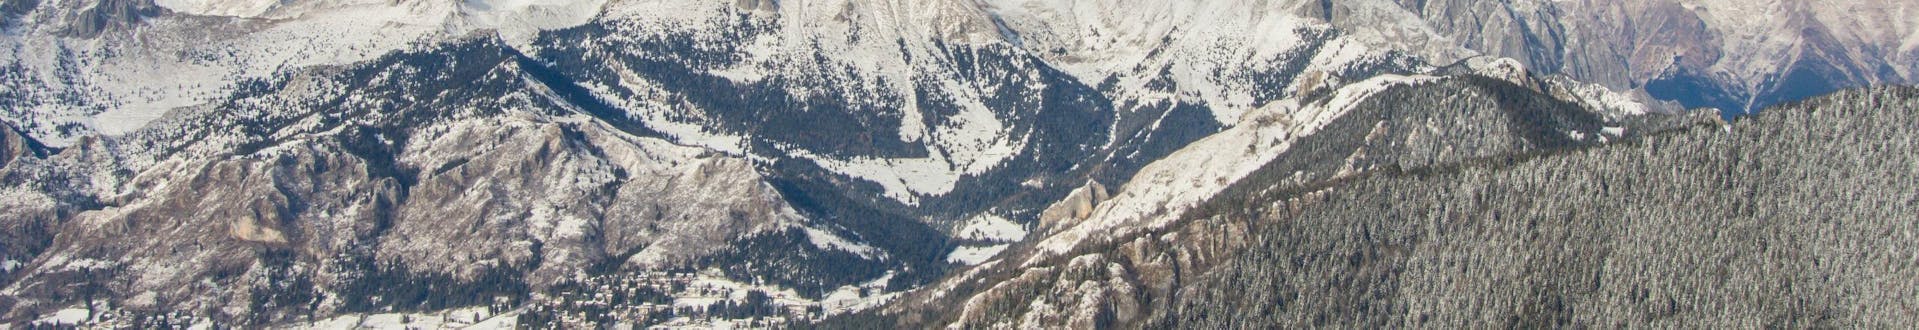 Una visuale sulla cime innevata del Monte Pora, dove le scuole di sci locali offrono le loro numerose lezioni di sci.